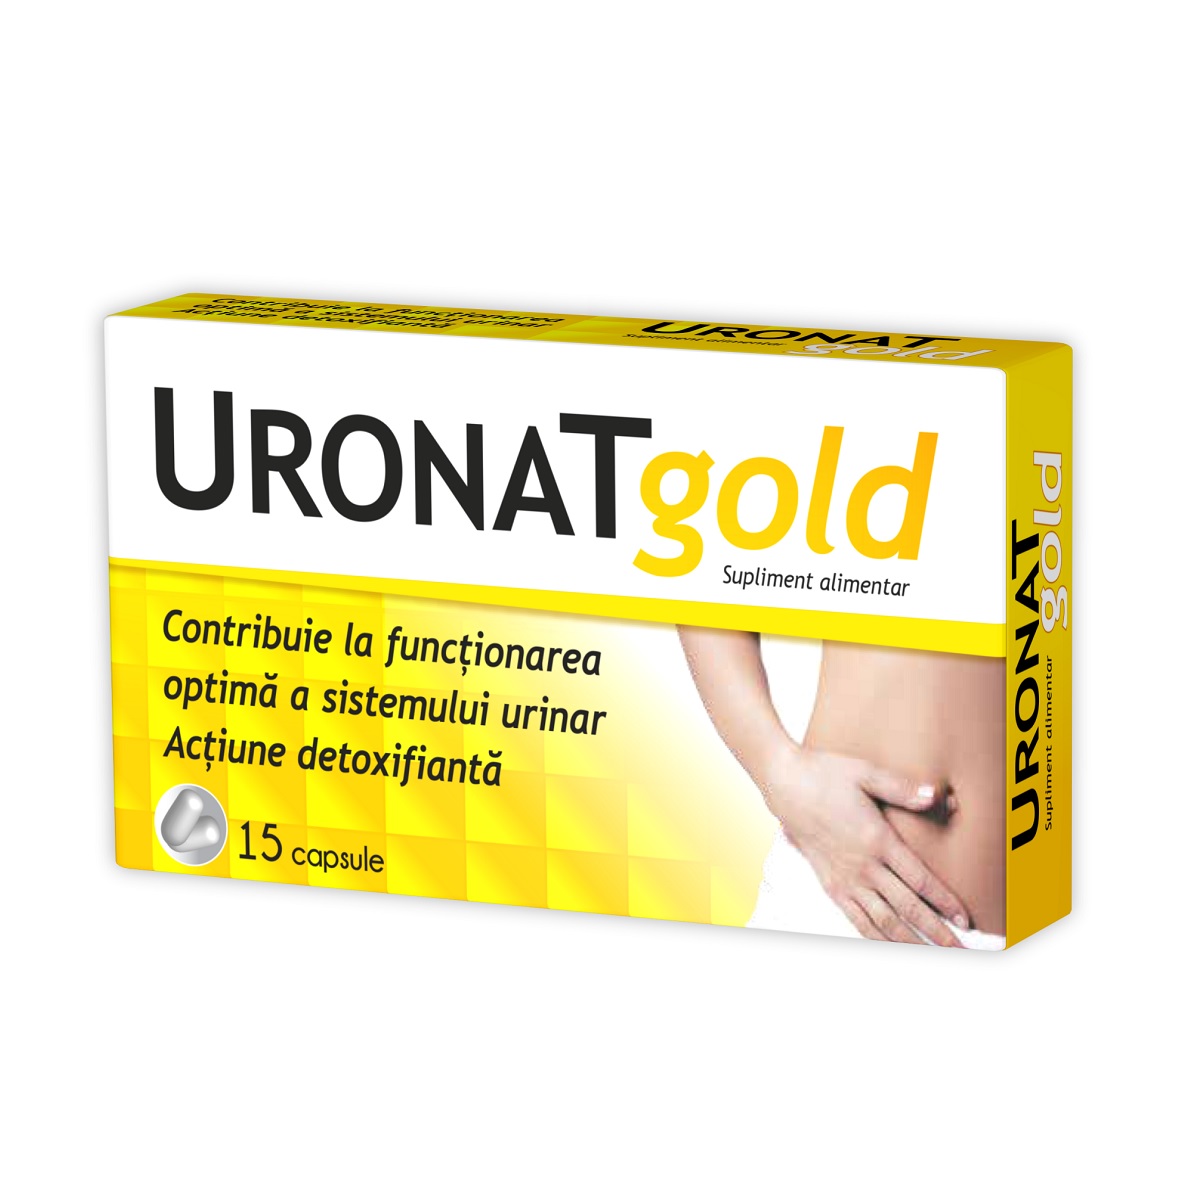 Dezinfectante urinare - Uronat gold, 15 capsule, Zdrovit, sinapis.ro